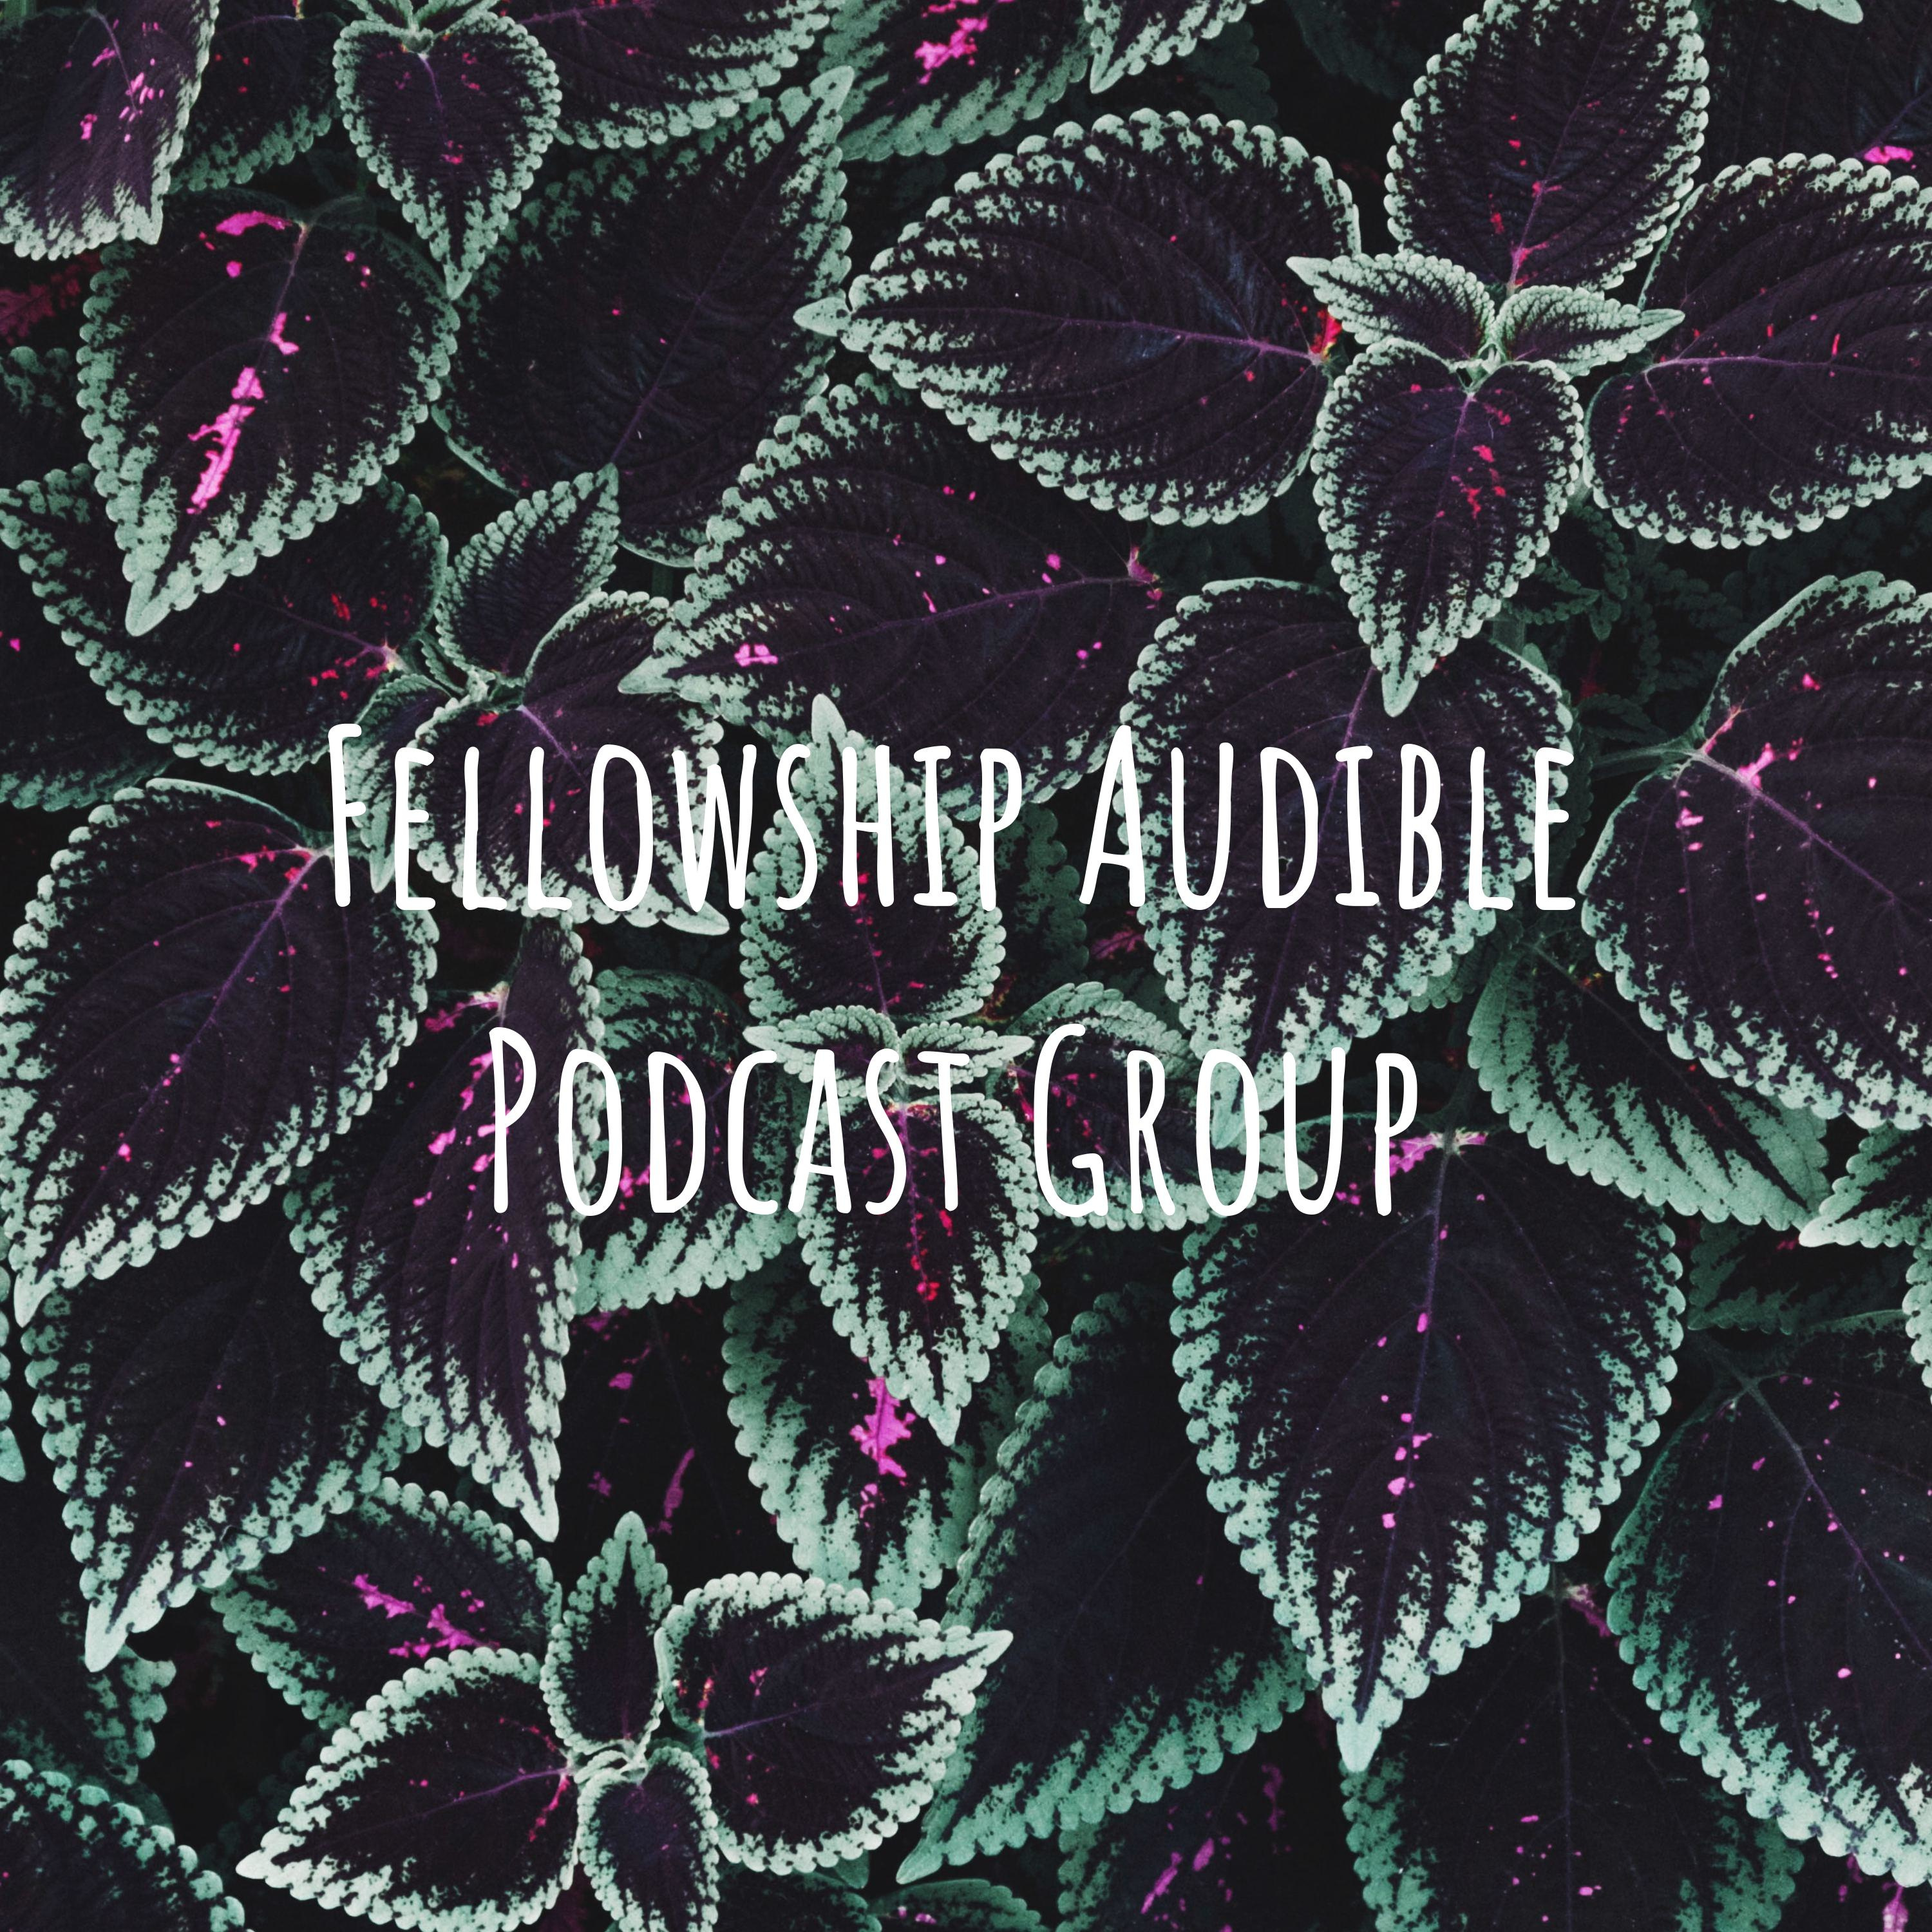 Fellowship Audio Podcast 08JUN19 | Shortest episode ever